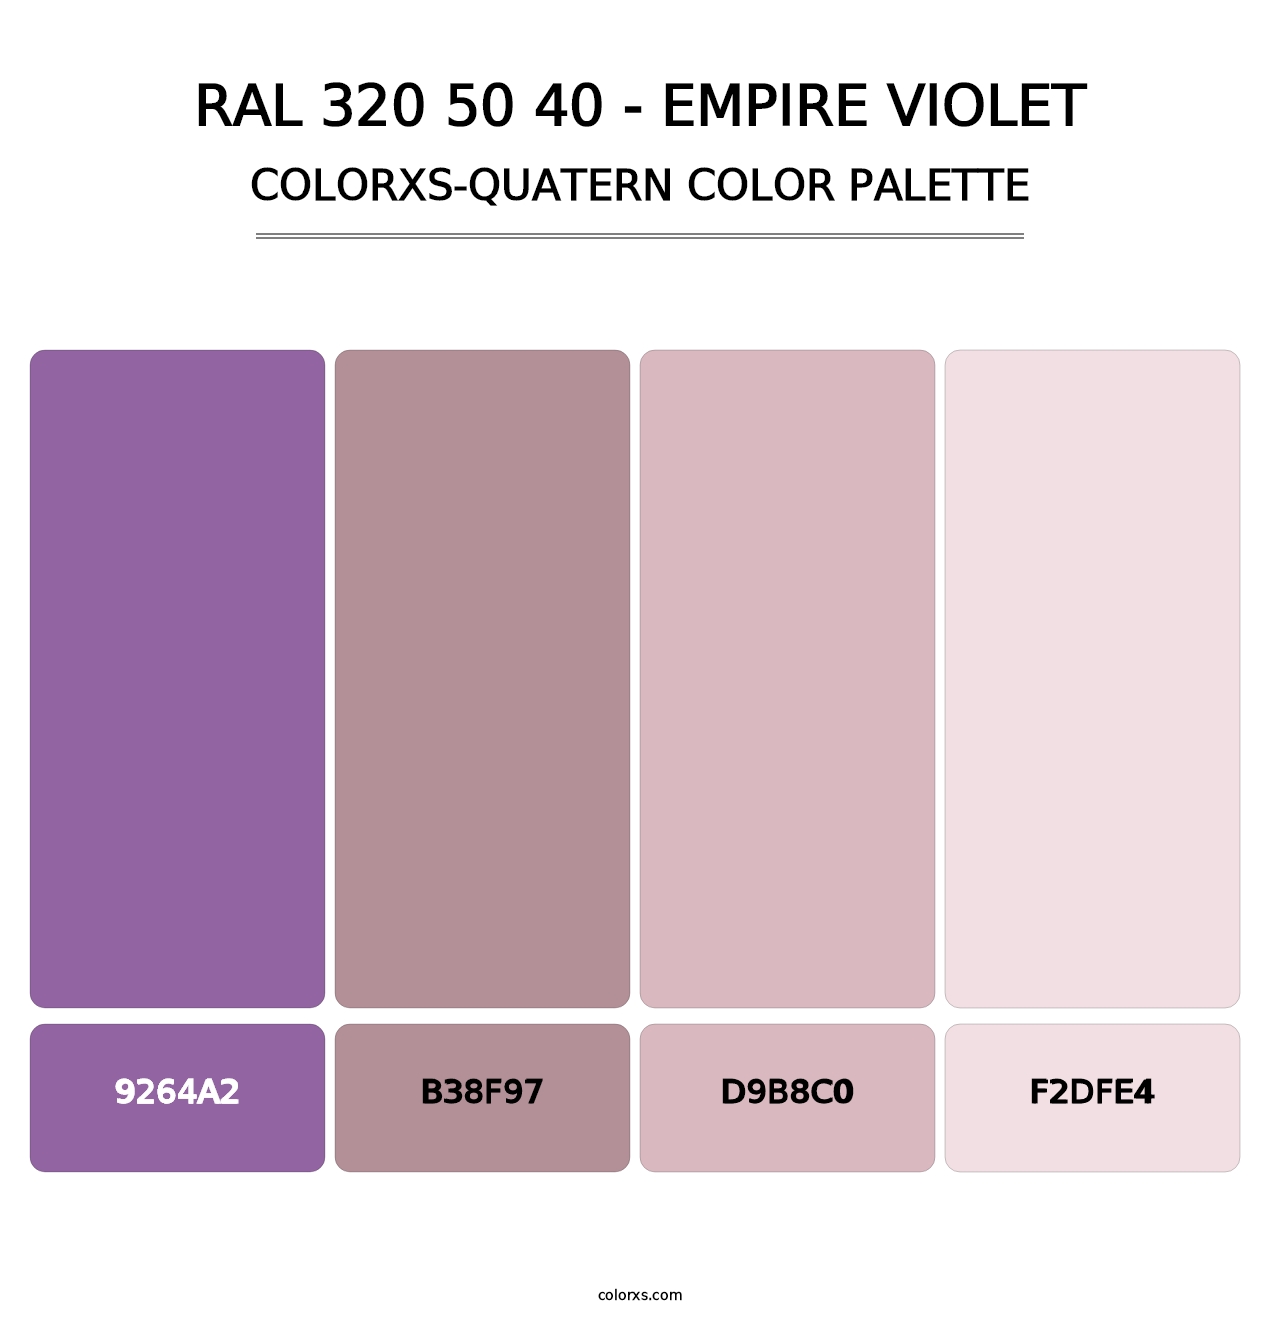 RAL 320 50 40 - Empire Violet - Colorxs Quatern Palette